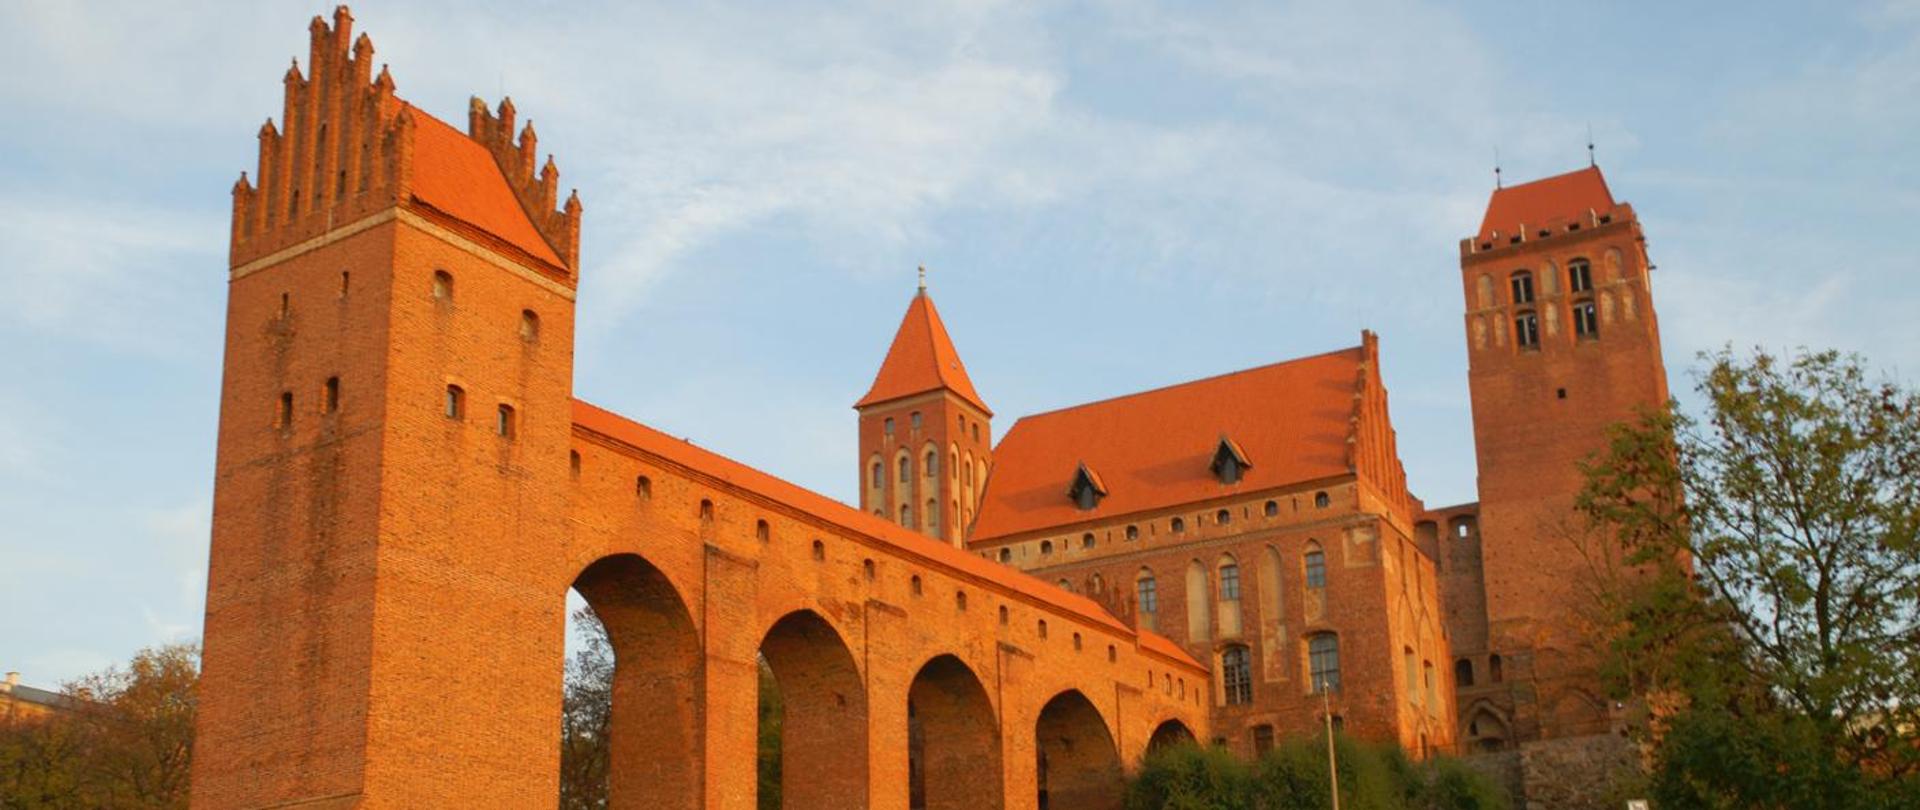 Zamek w Kwidzynie - Oddział Muzeum Zamkowego w Malborku